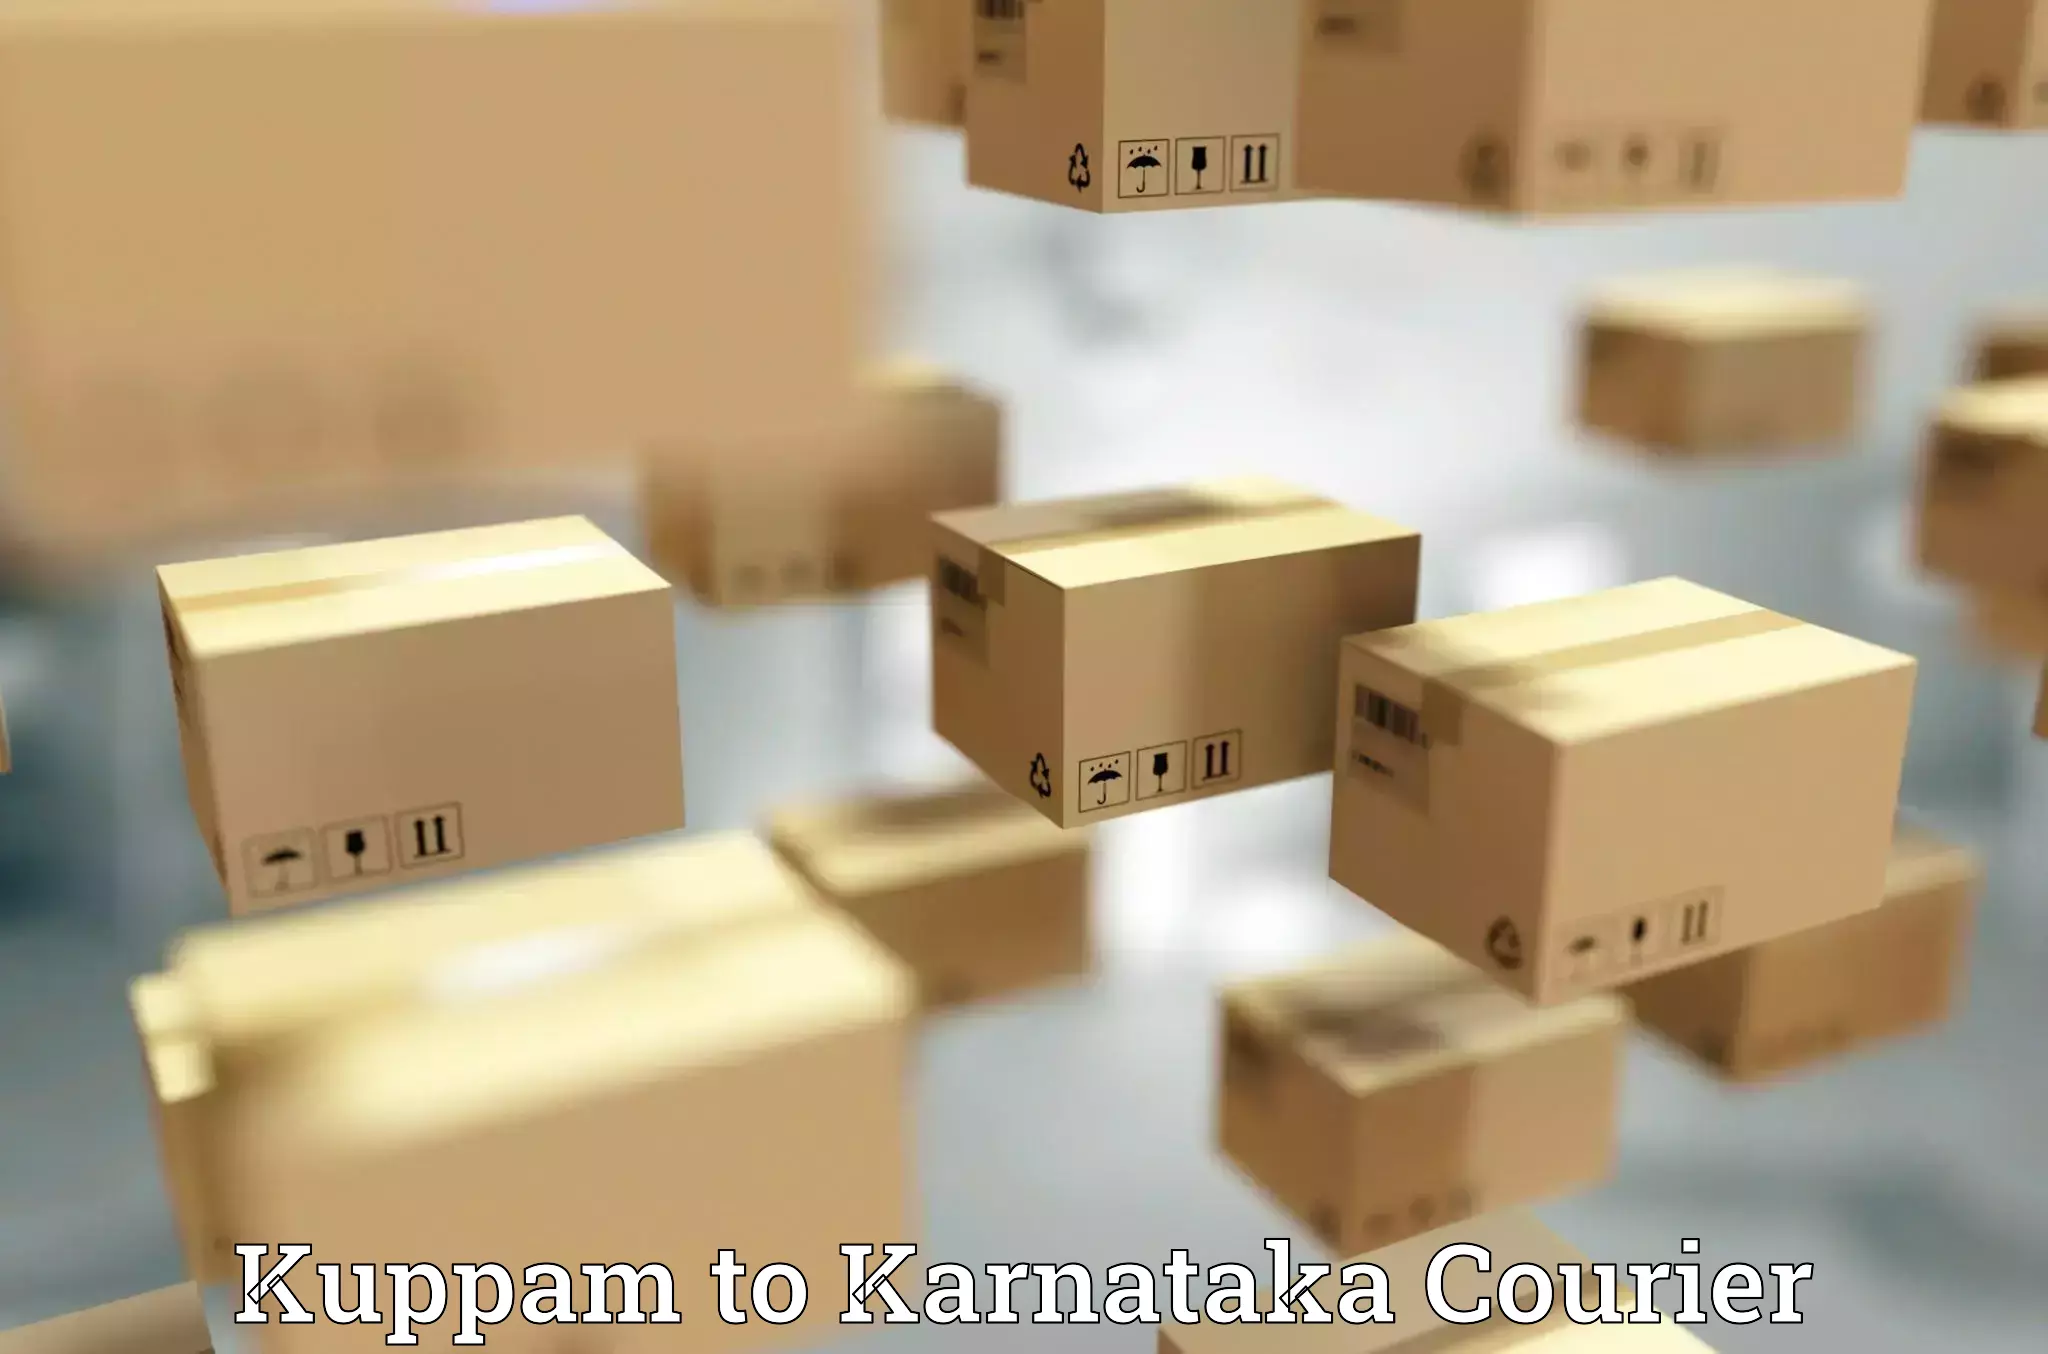 Express logistics service Kuppam to Karnataka